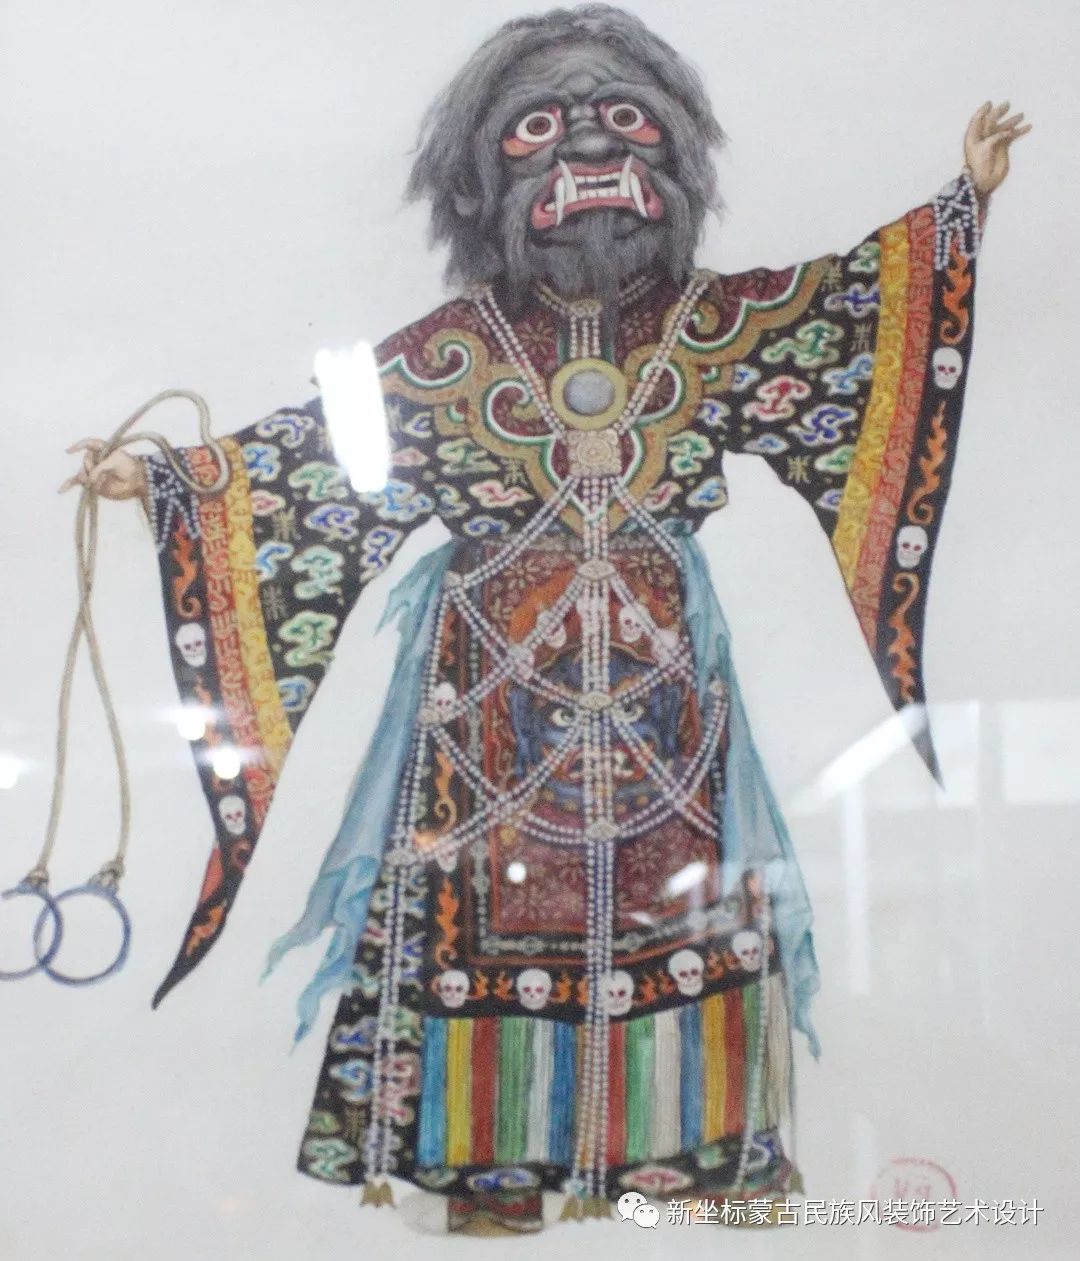 蒙古族萨满教“萨满法师”装束，丹麦摄影师… - 高清图片，堆糖，美图壁纸兴趣社区